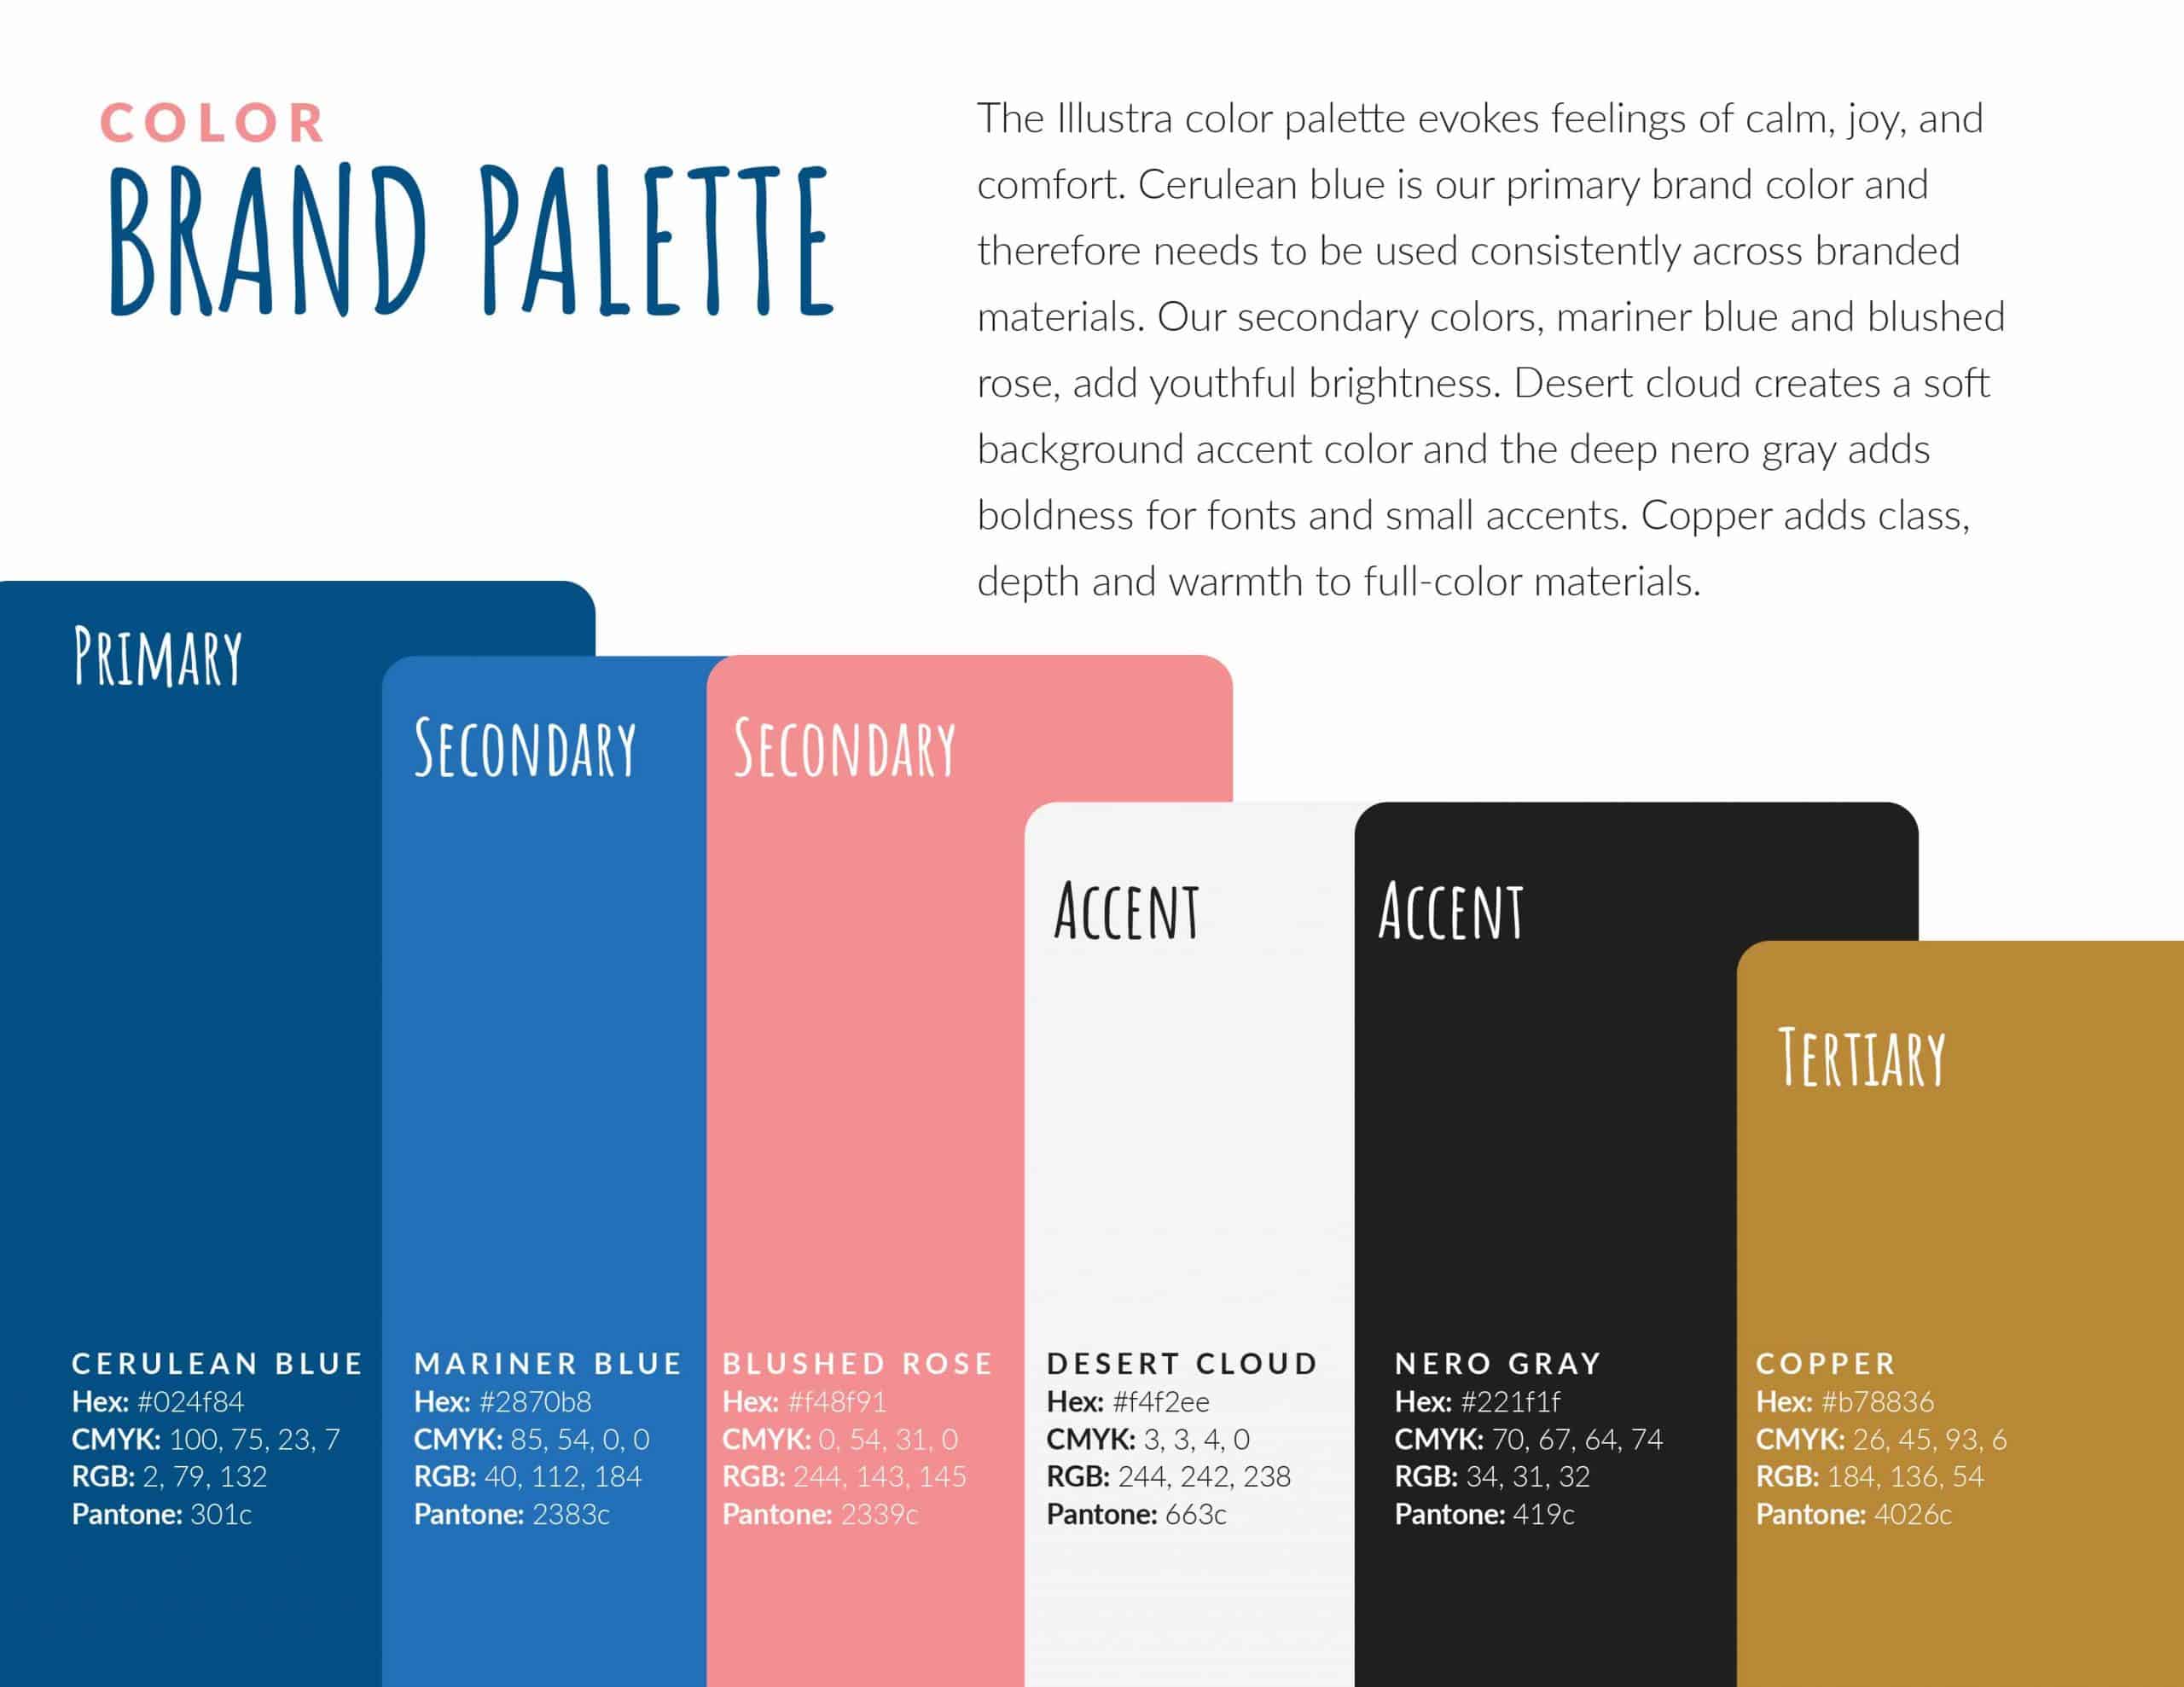 Illustra Dermatology Brand Guide - Brand Palette